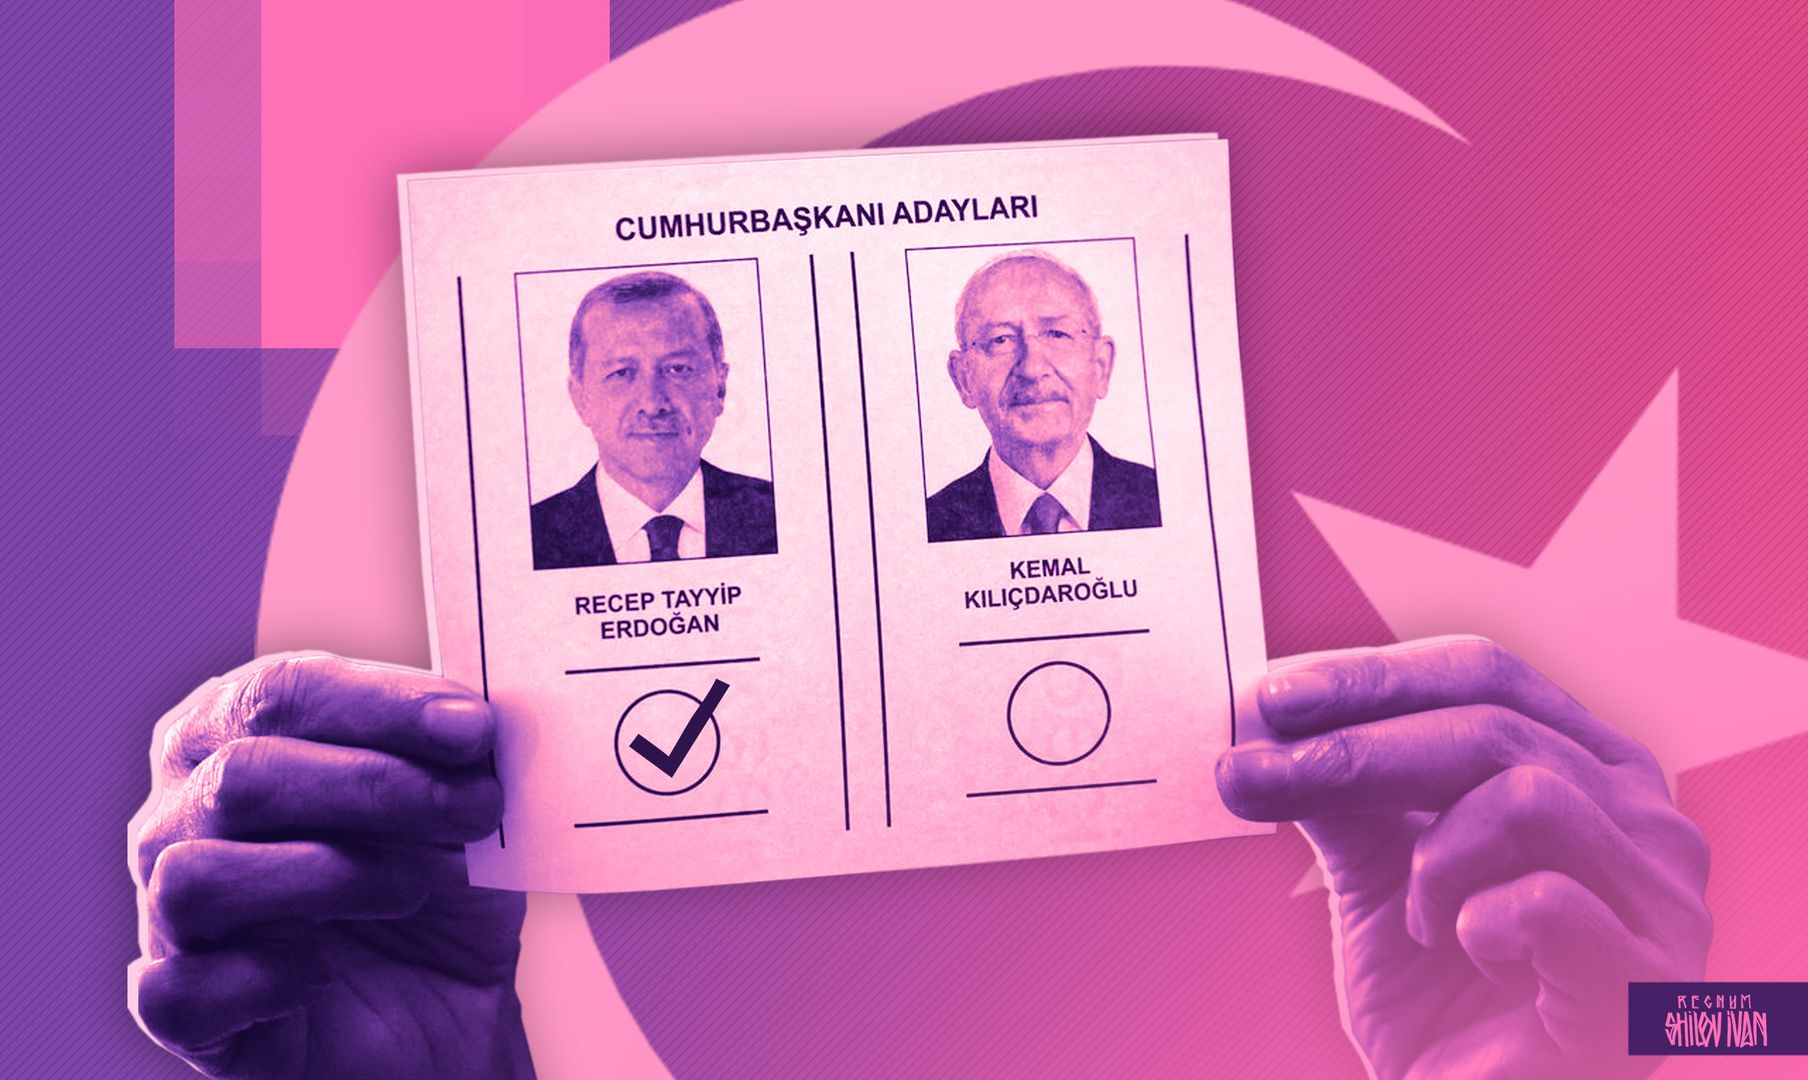 Победа Эрдогана во втором туре президентских выборов в Турции